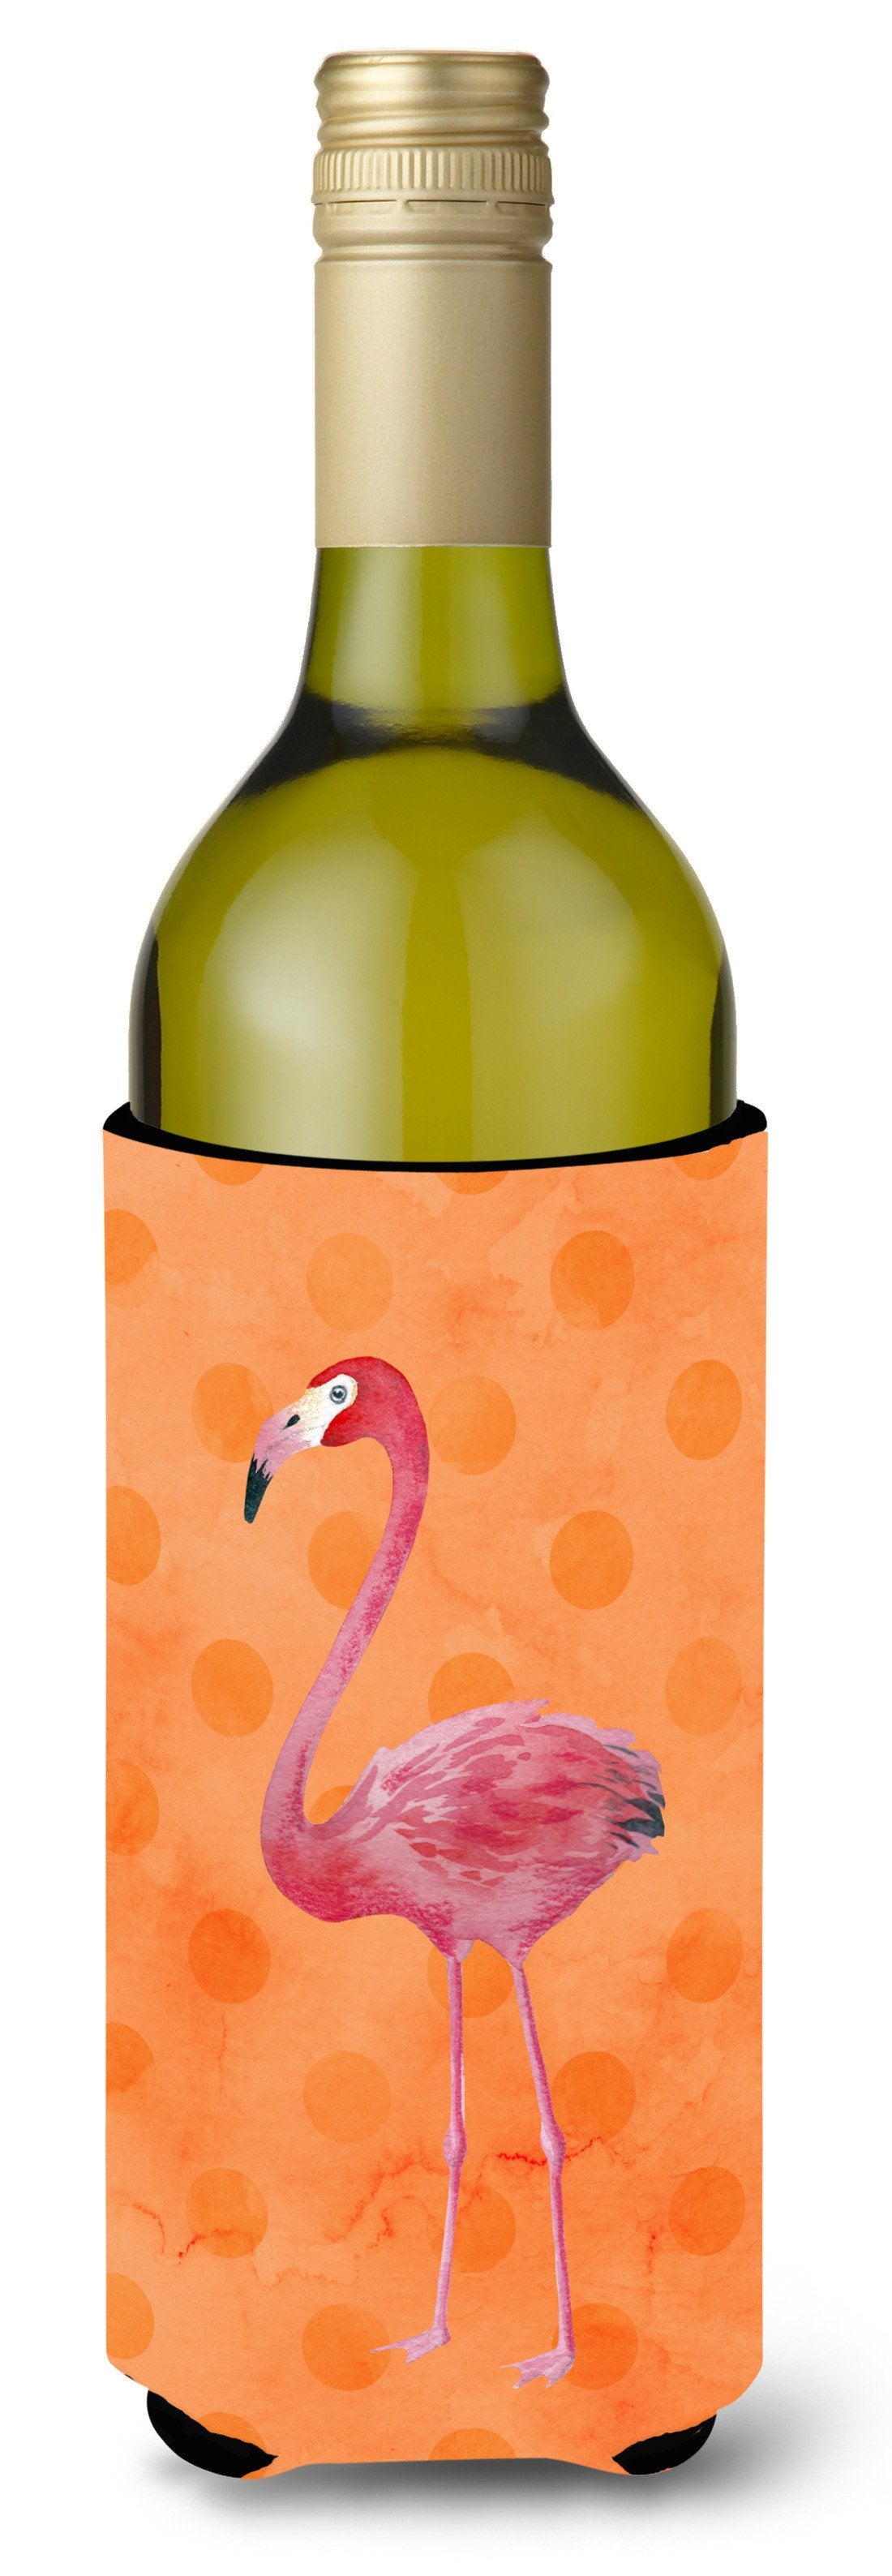 Flamingo Orange Polkadot Wine Bottle Beverge Insulator Hugger BB8188LITERK by Caroline's Treasures